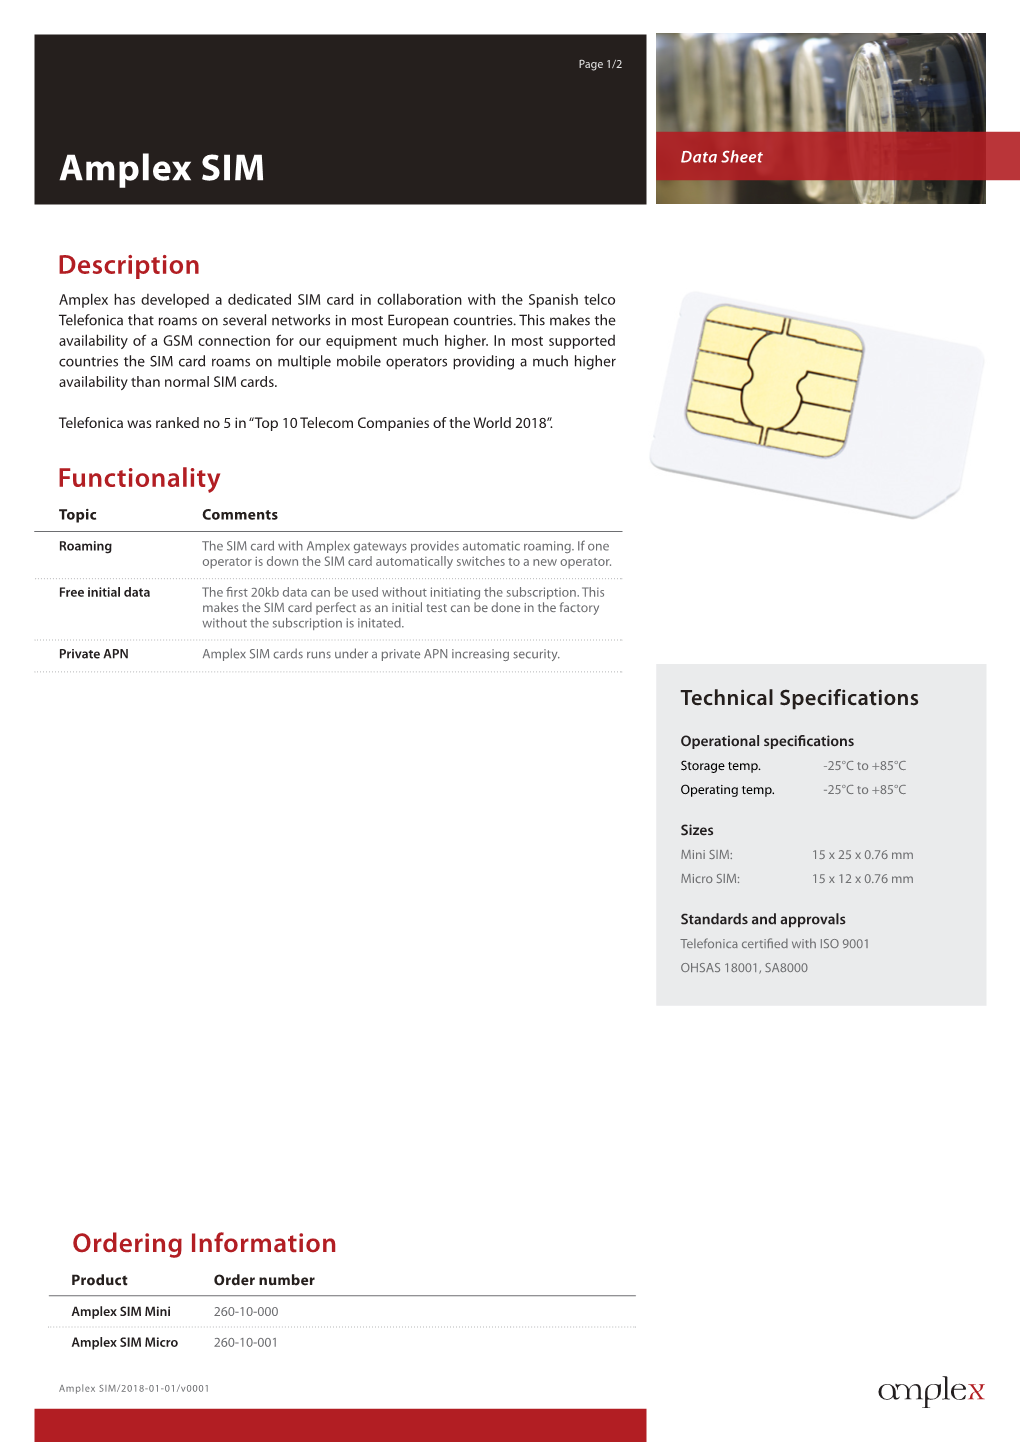 Amplex SIM Cards Runs Under a Private APN Increasing Security